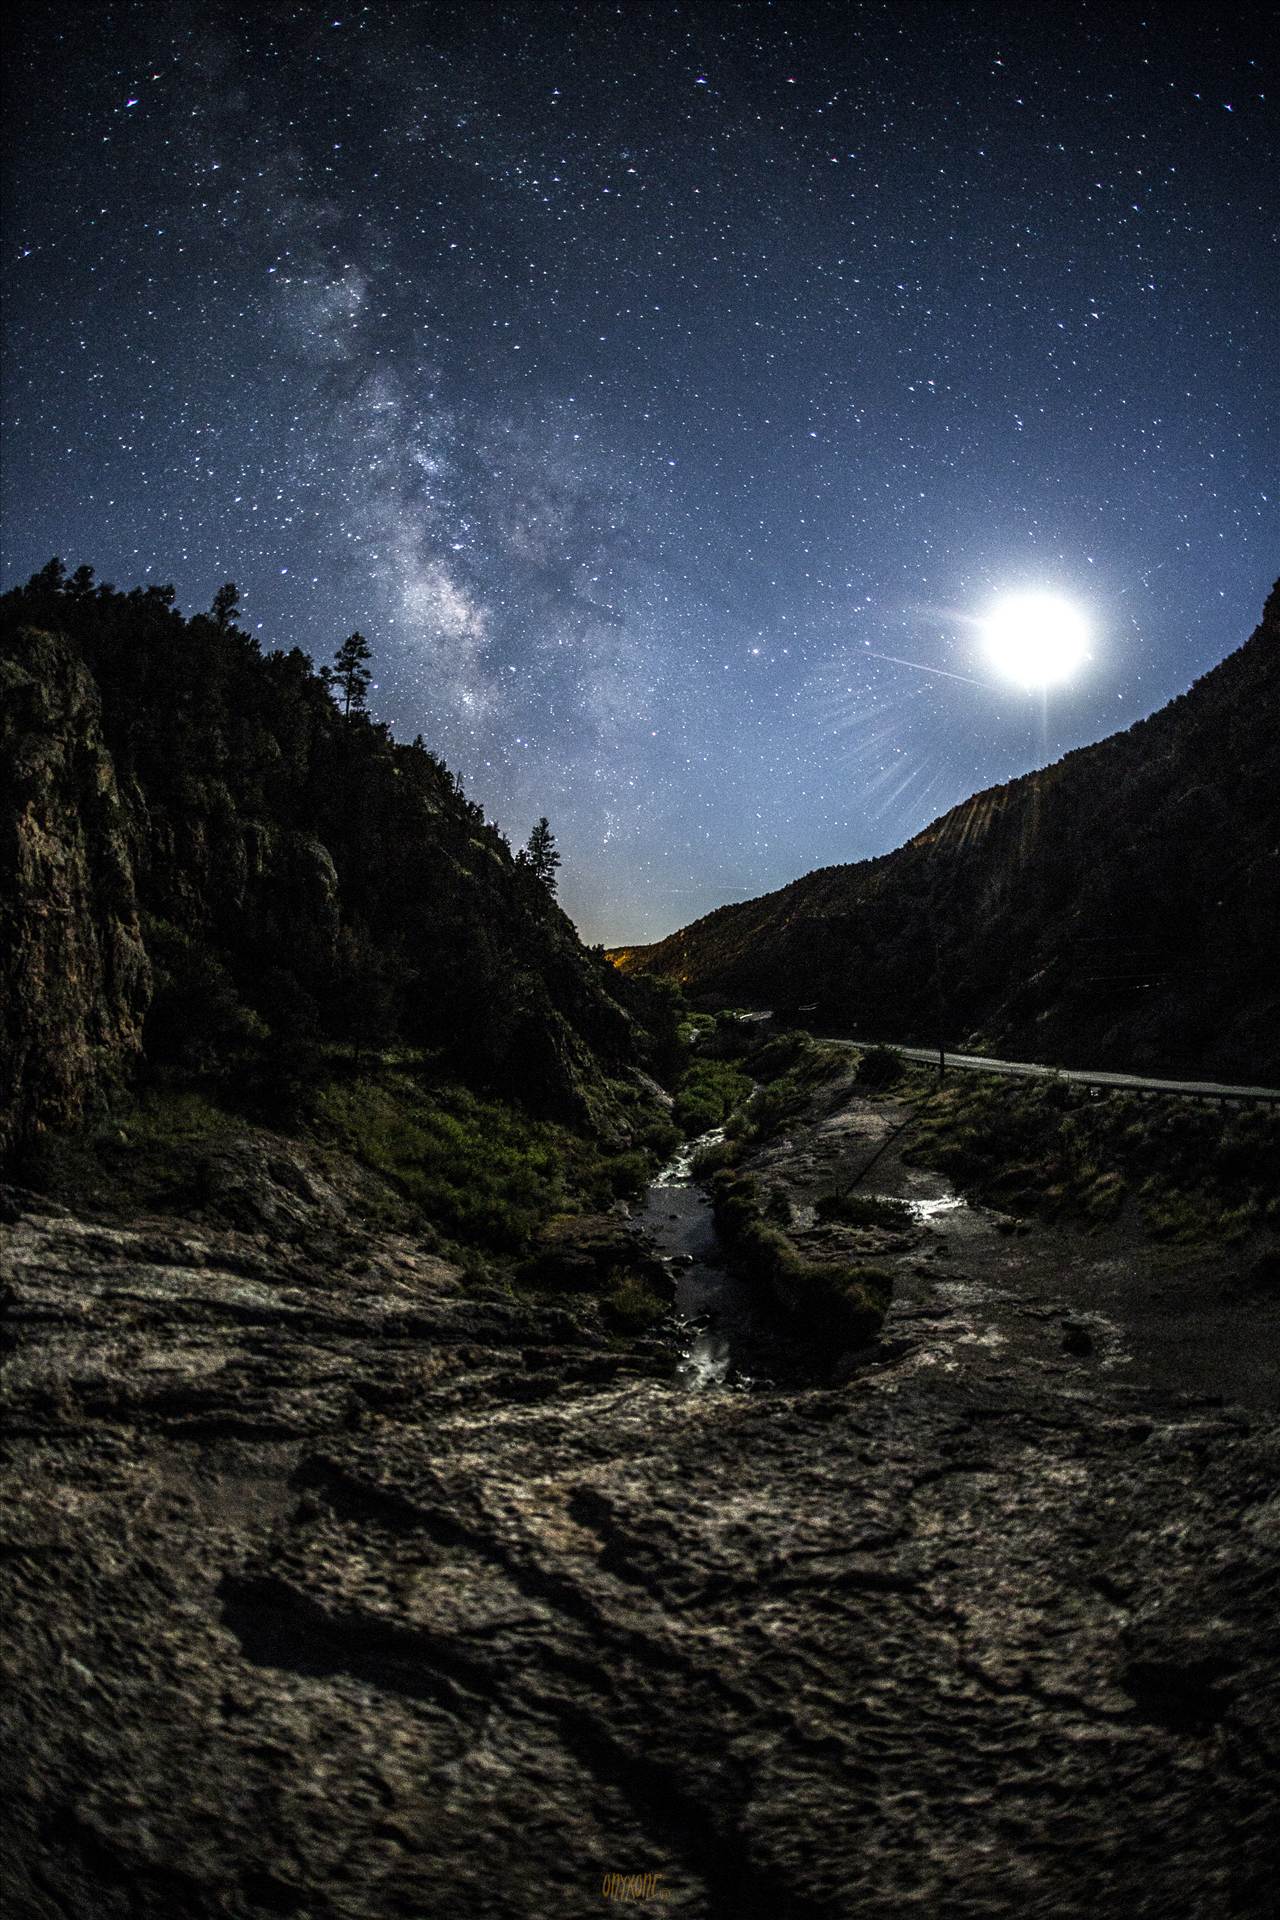 Soda Dam And Milky Way.jpg -  by Joey Onyxone Sandoval